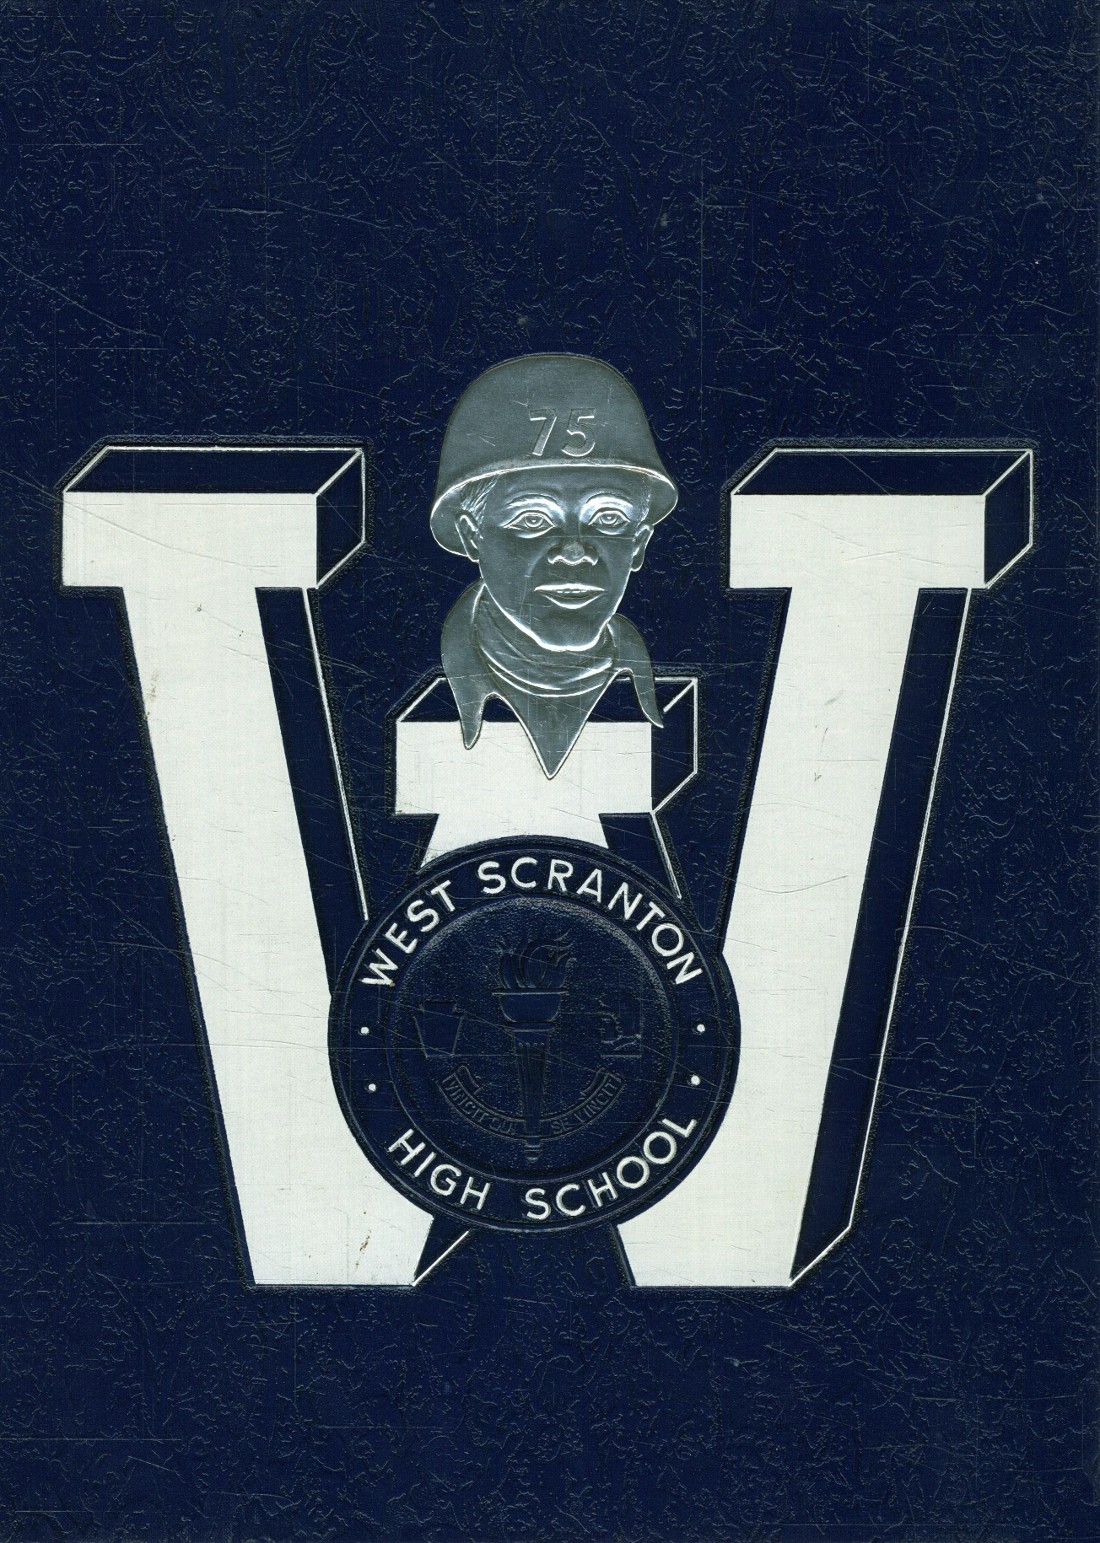 1975 yearbook from West Scranton High School from Scranton, Pennsylvania